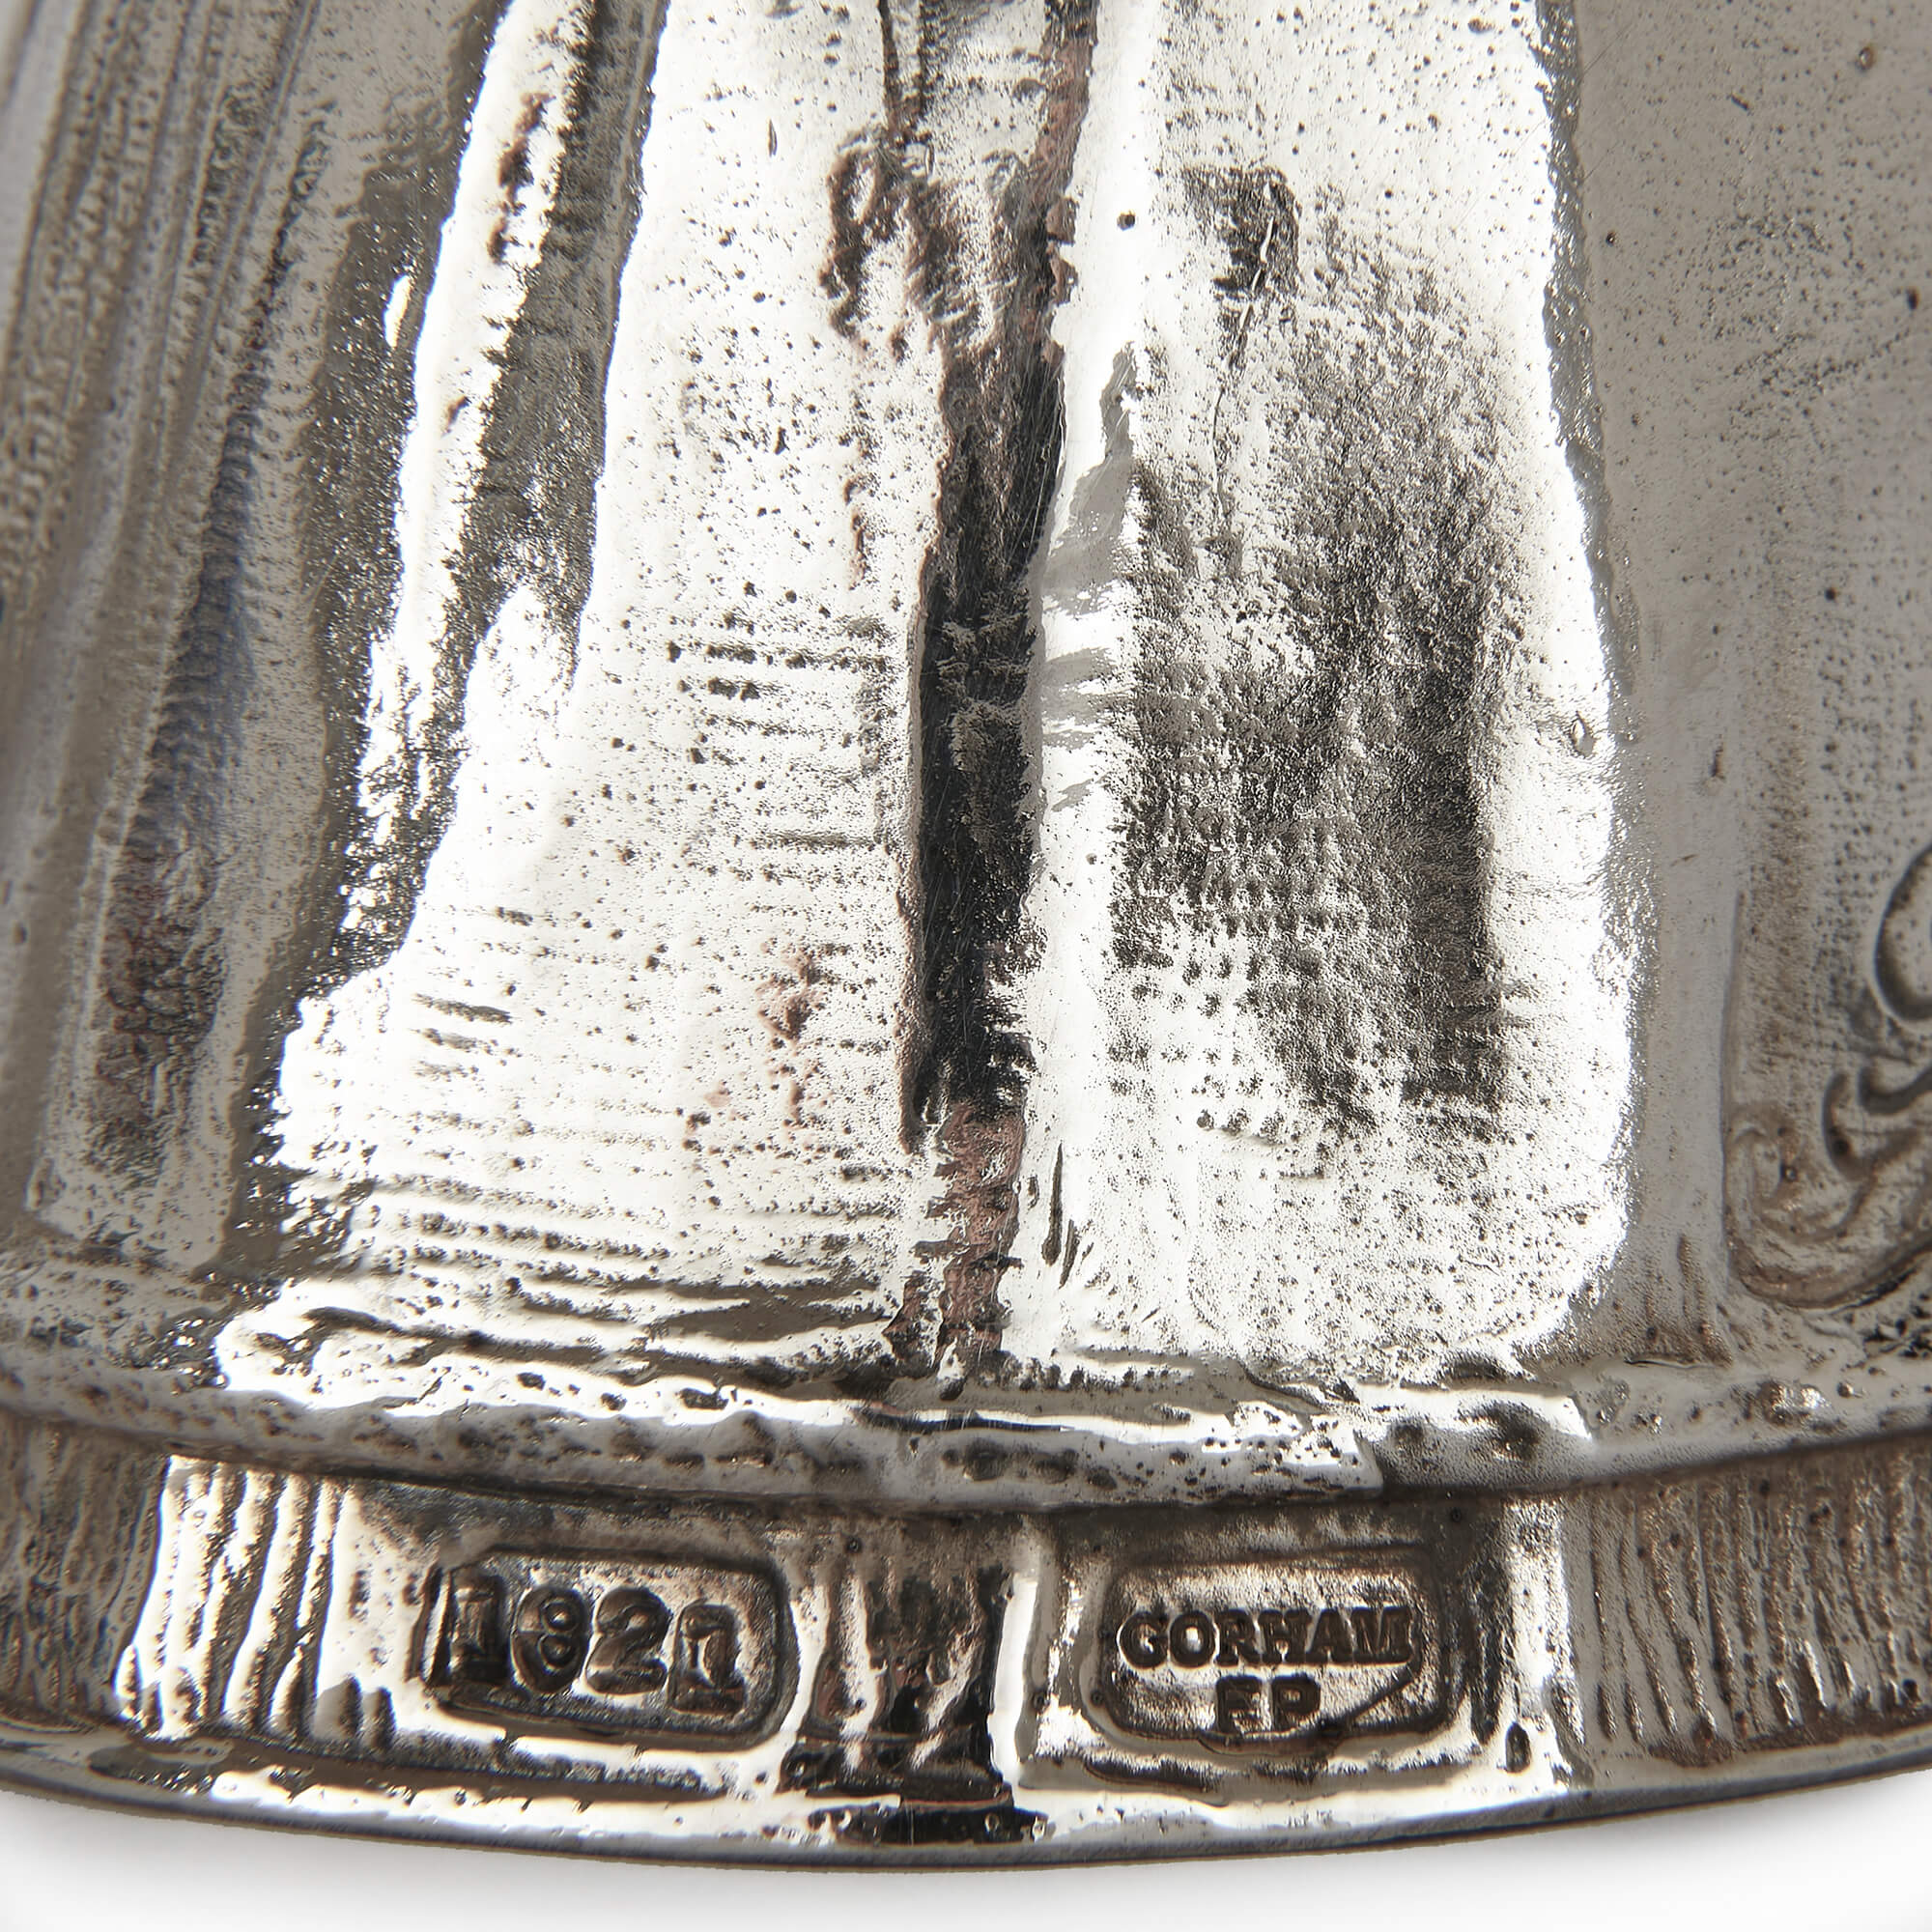 Set of twelve silver-plated bronze Queen hand bells by Gorham For